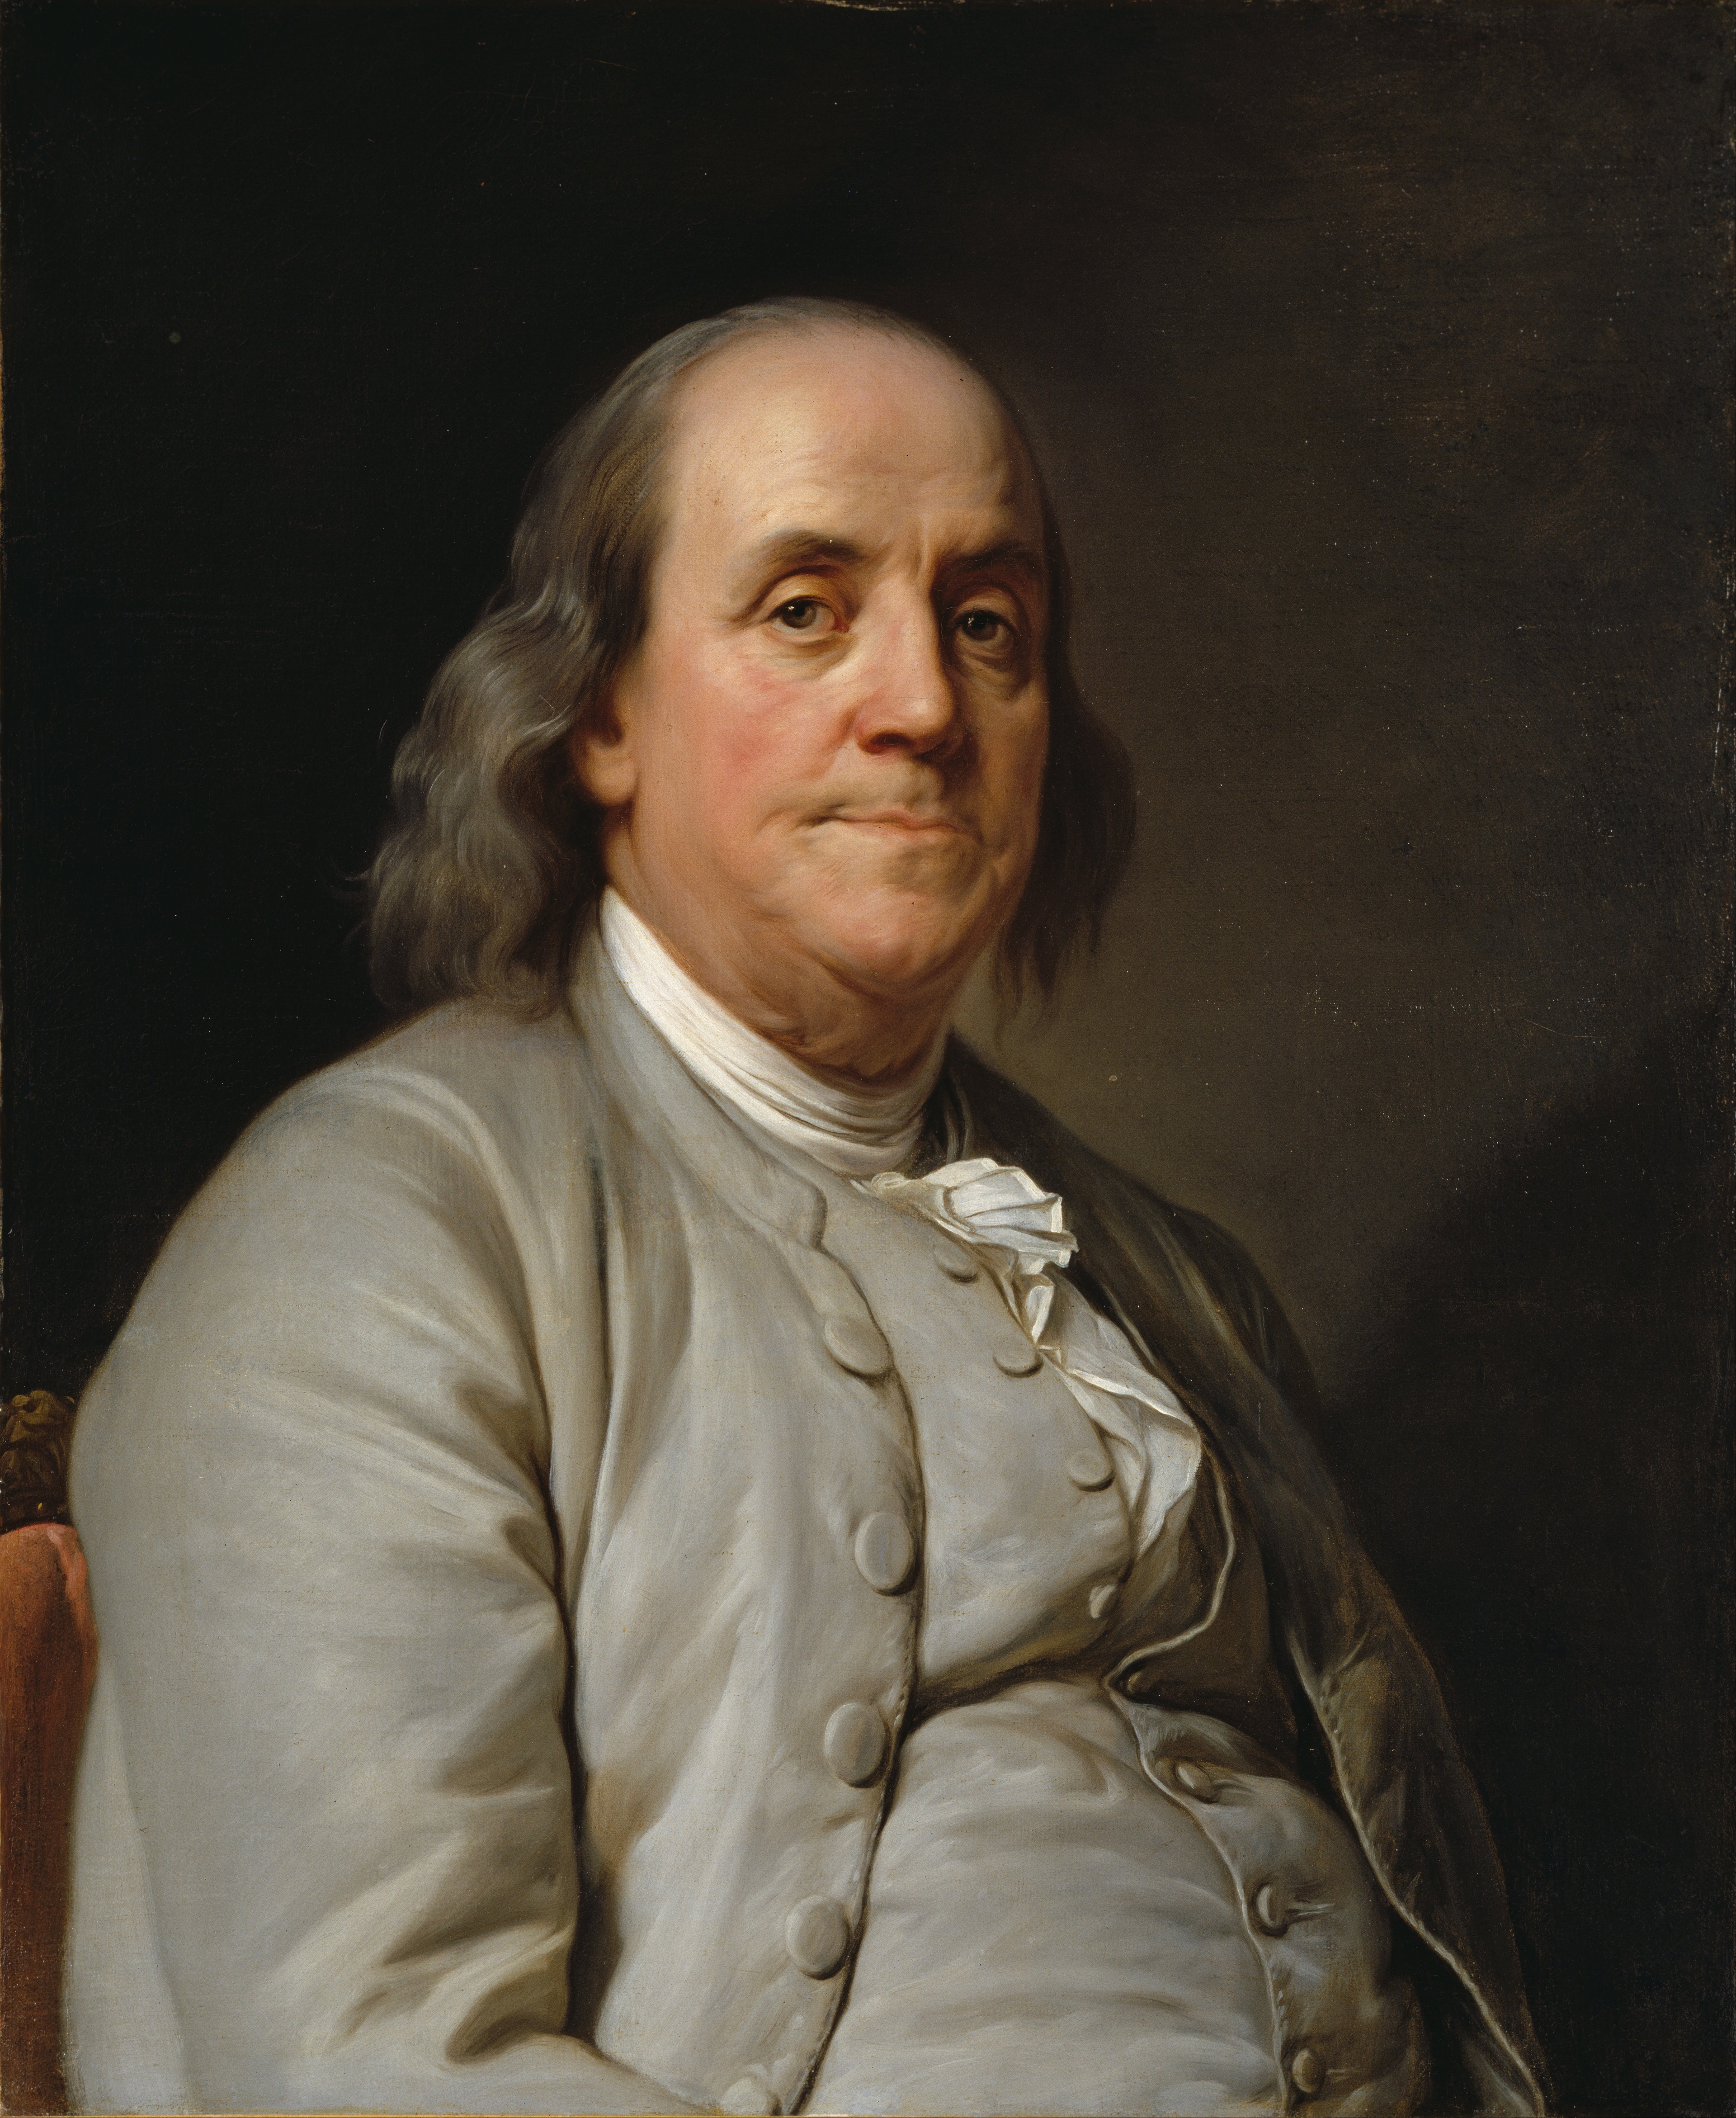 auteur Benjamin Franklin de la citation Un homme n'est pas complètement né tant qu'il n'est pas mort.